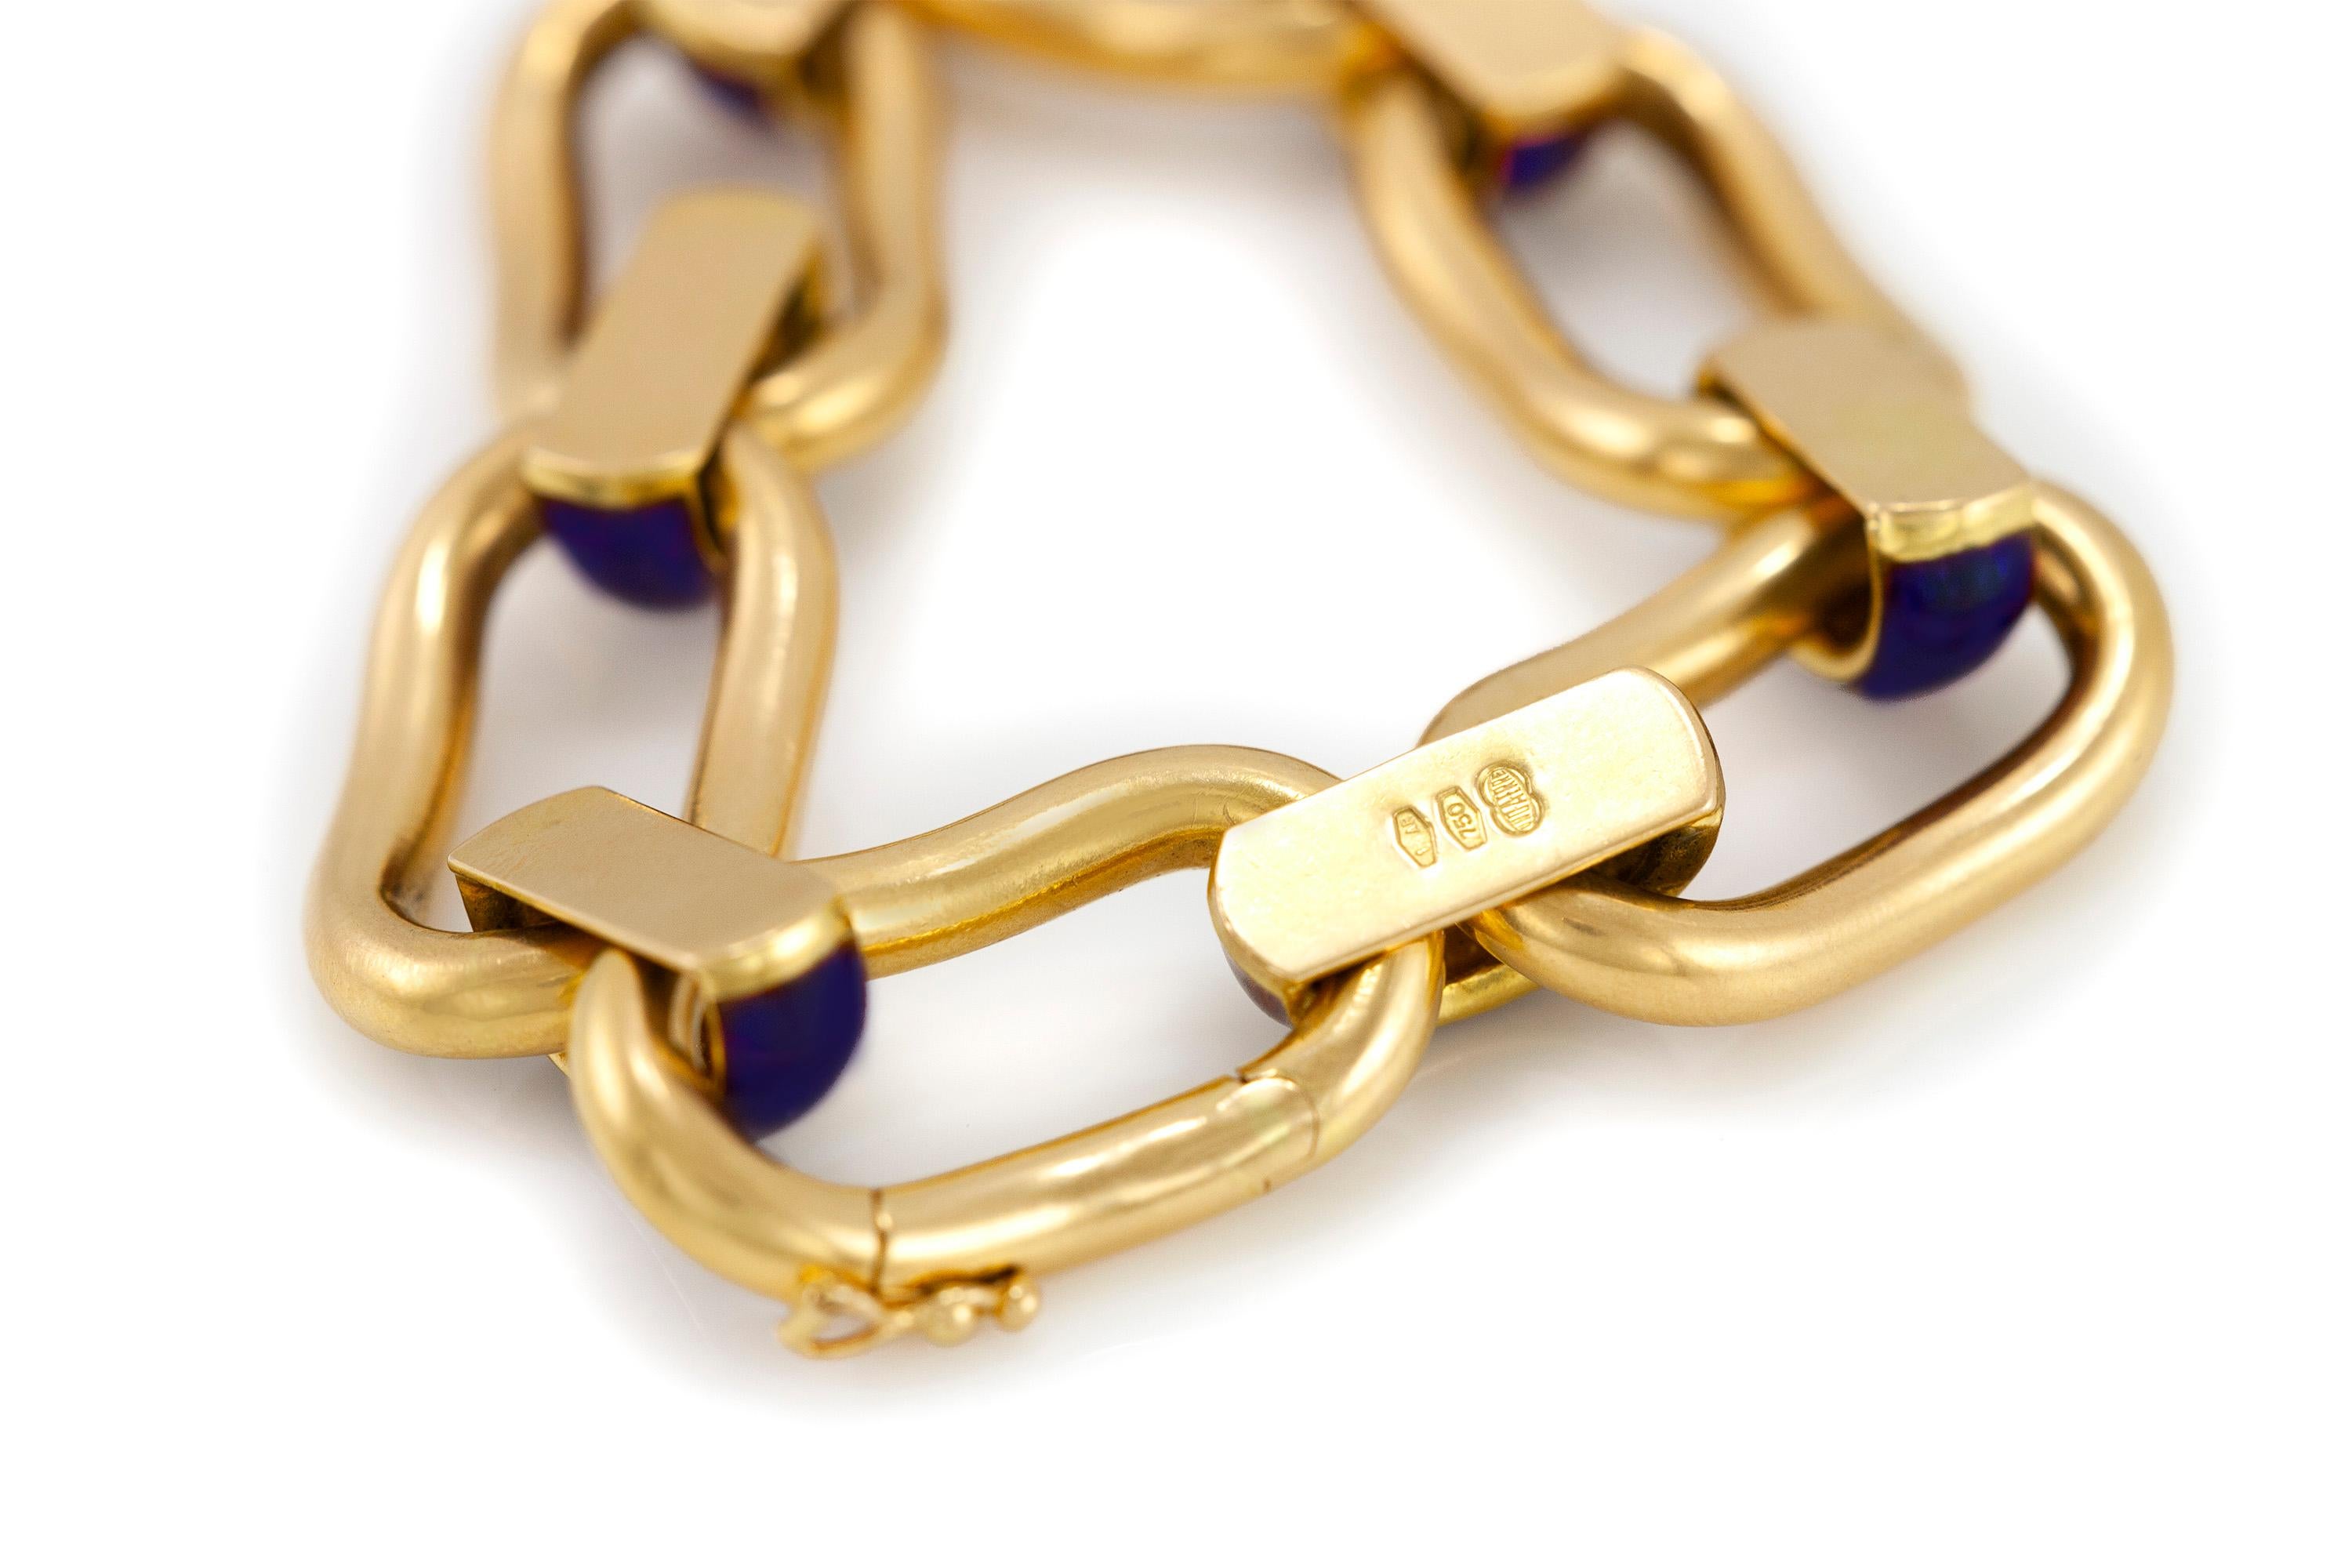 Le bracelet est finement travaillé en or jaune 18k avec de l'émail brun et pèse environ 30,3 dwt au total.
Circa 1960.
Signé par Unoarre
